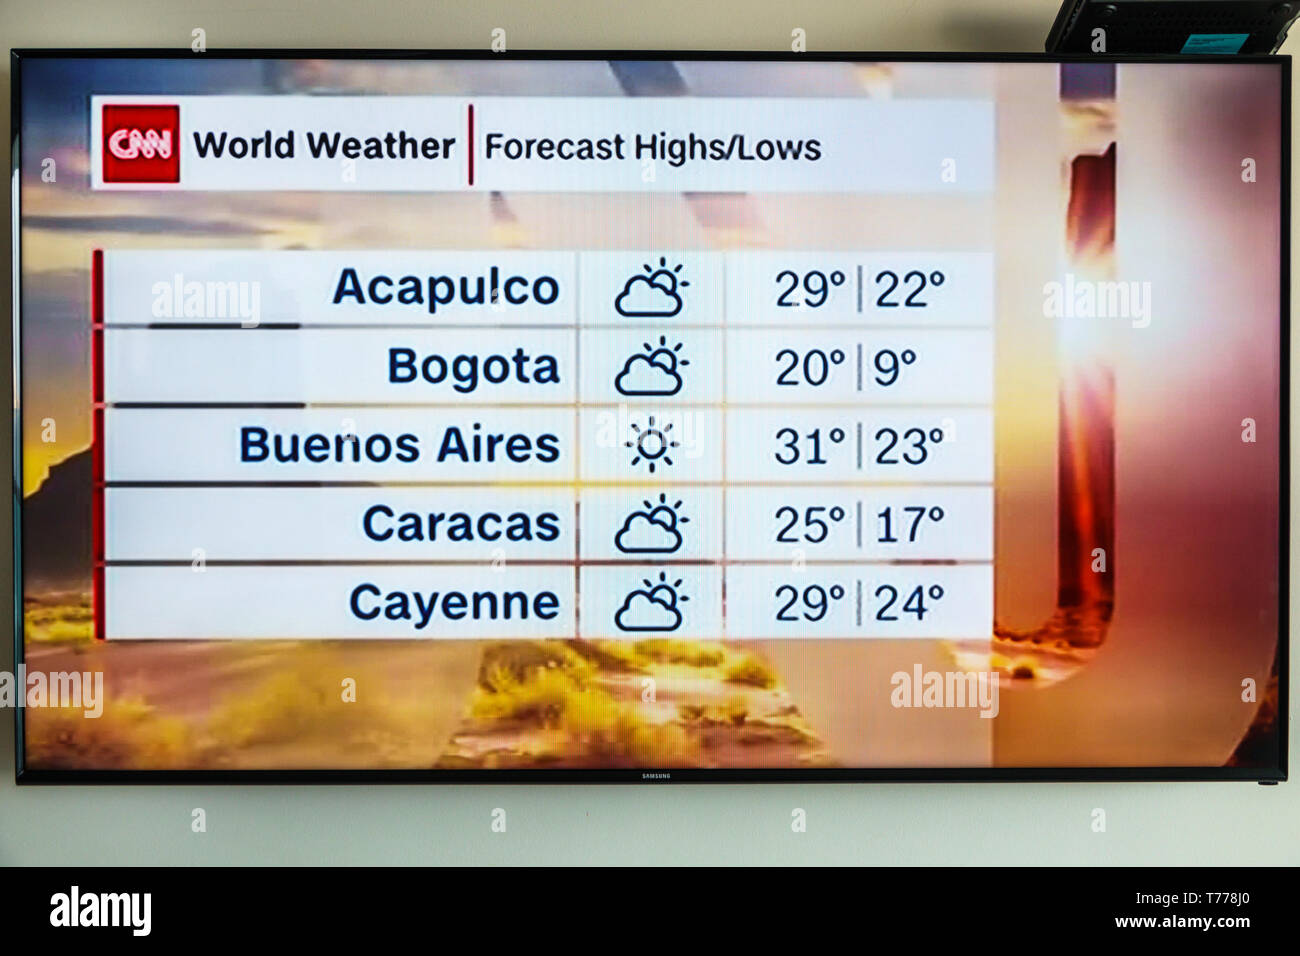 Cartagena Kolumbien, TV-Fernsehbildschirm Flachbildschirm, CNN Welt-Wettervorhersage, Grad, Lateinamerika Städte, Besucher Reise Reise-Tour Stockfoto